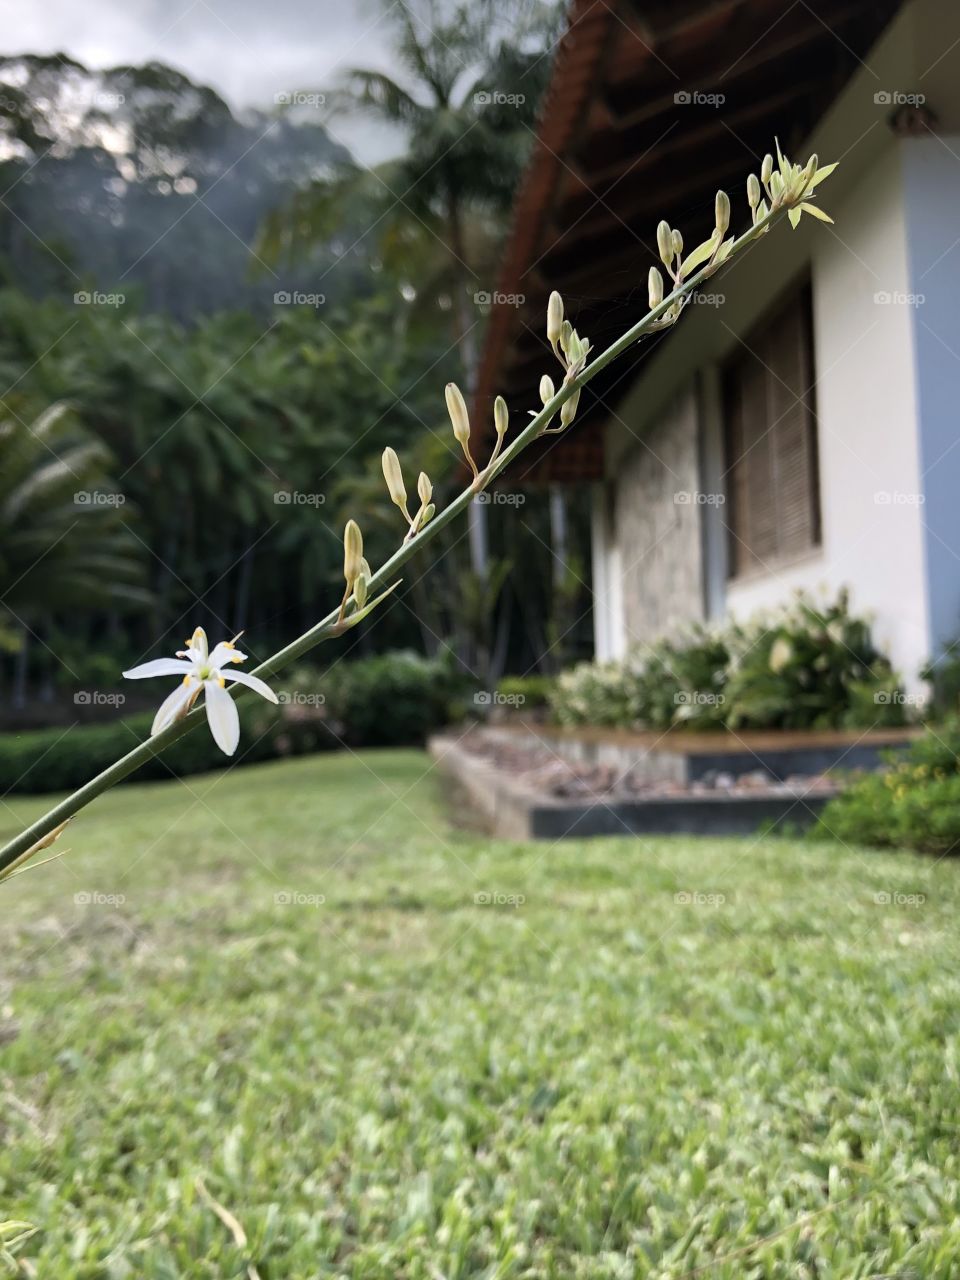 Flor pequena no galho com paisagem de casa atrás